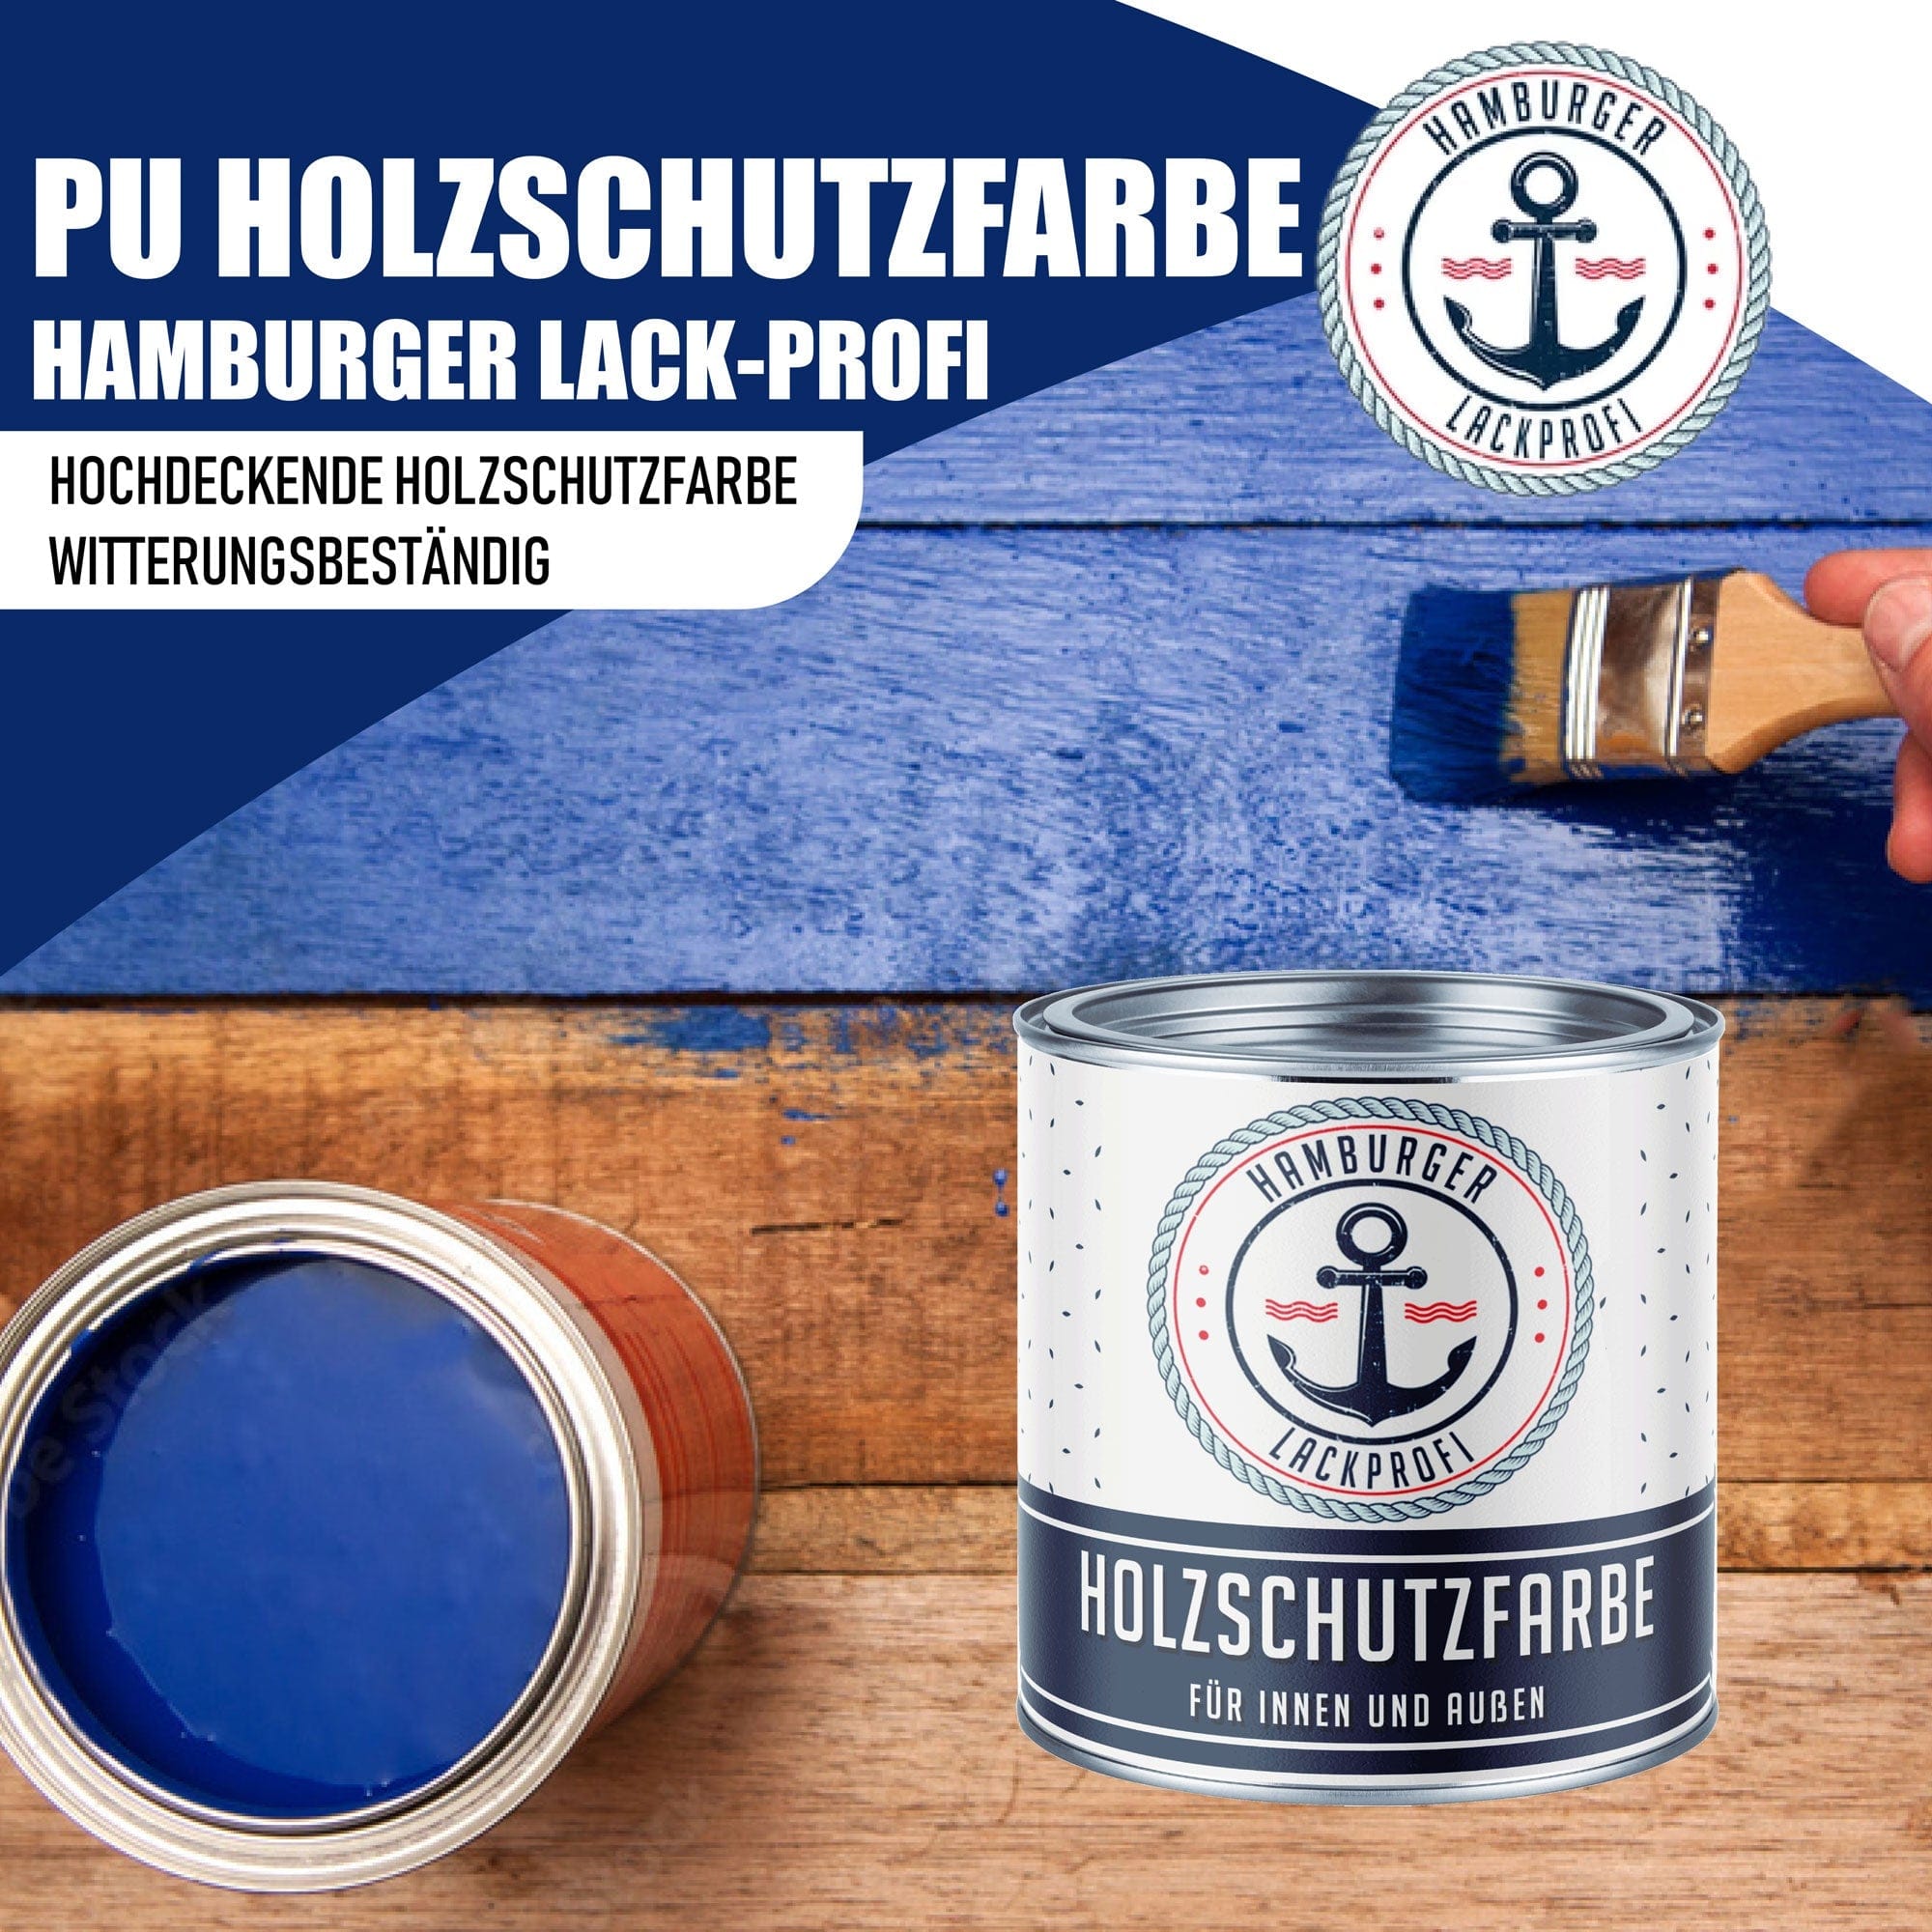 Hamburger Lack-Profi Lacke & Beschichtungen PU Holzschutzfarbe - Wetterschutzfarbe ohne Schleifen